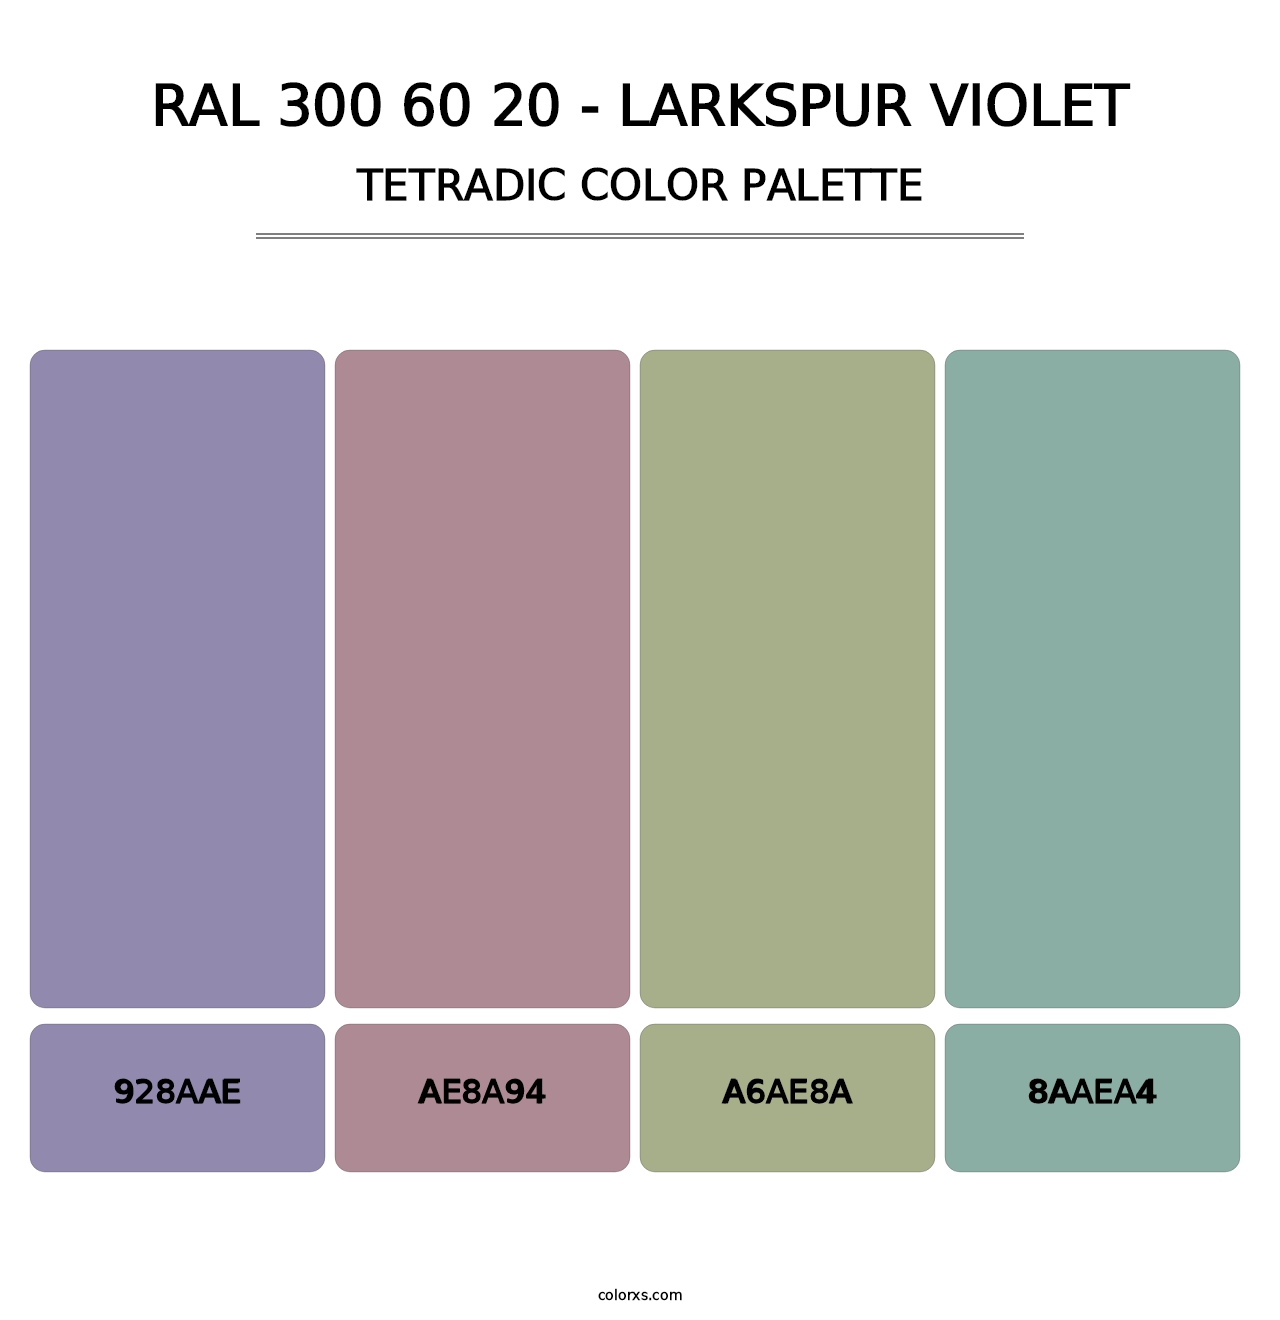 RAL 300 60 20 - Larkspur Violet - Tetradic Color Palette